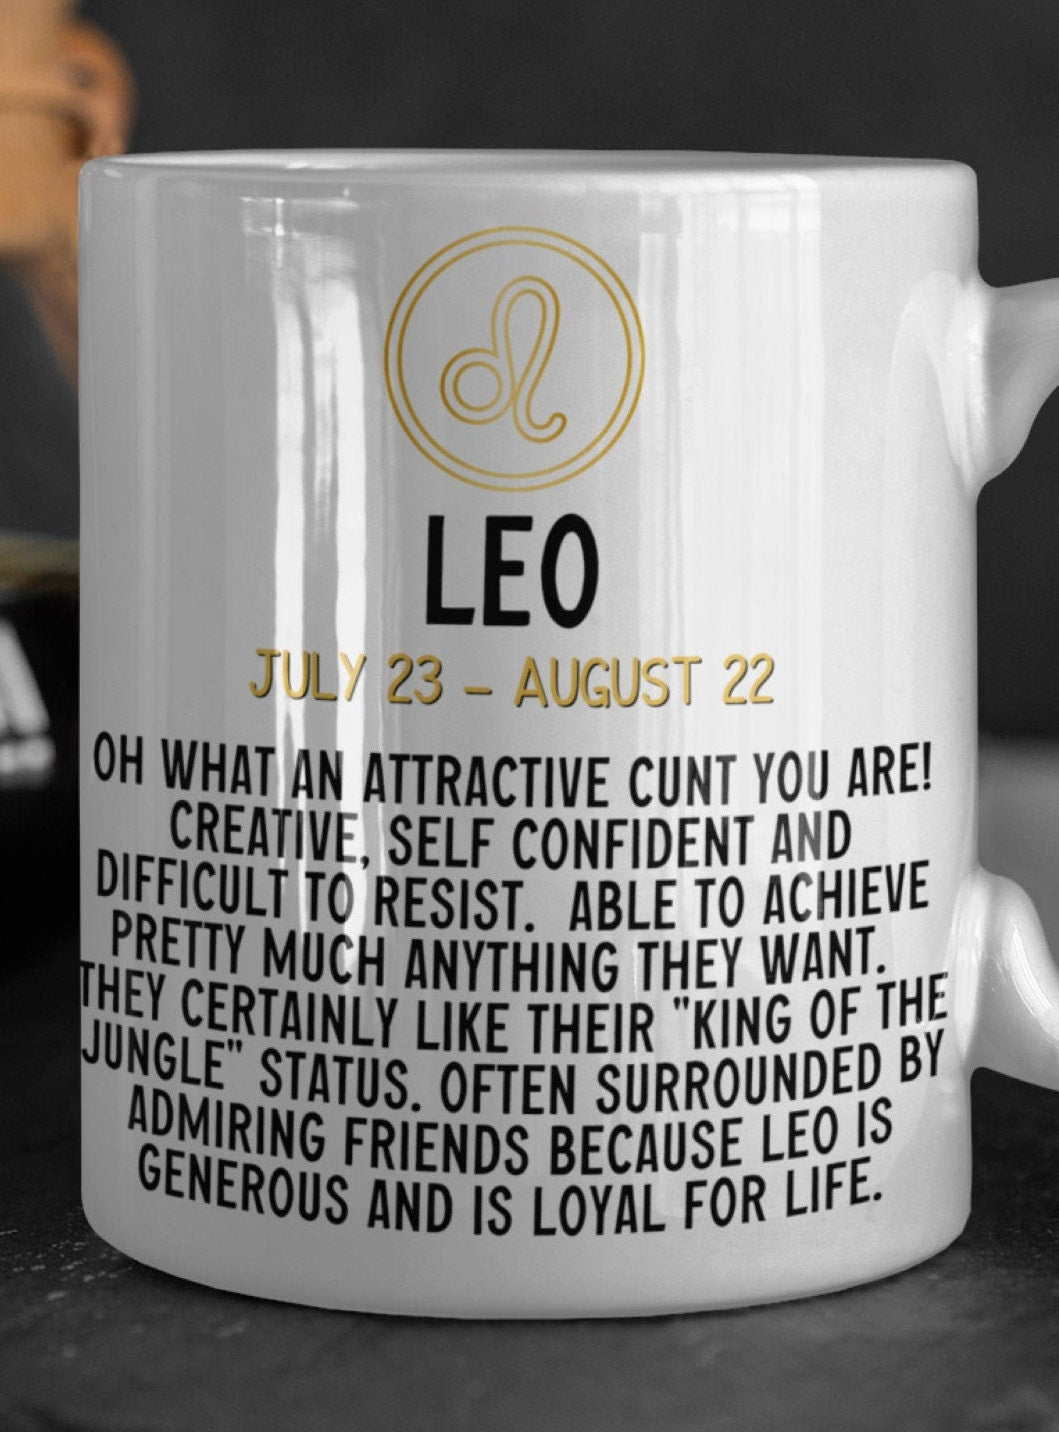 Leo star sign horoscope sweary profanity mug